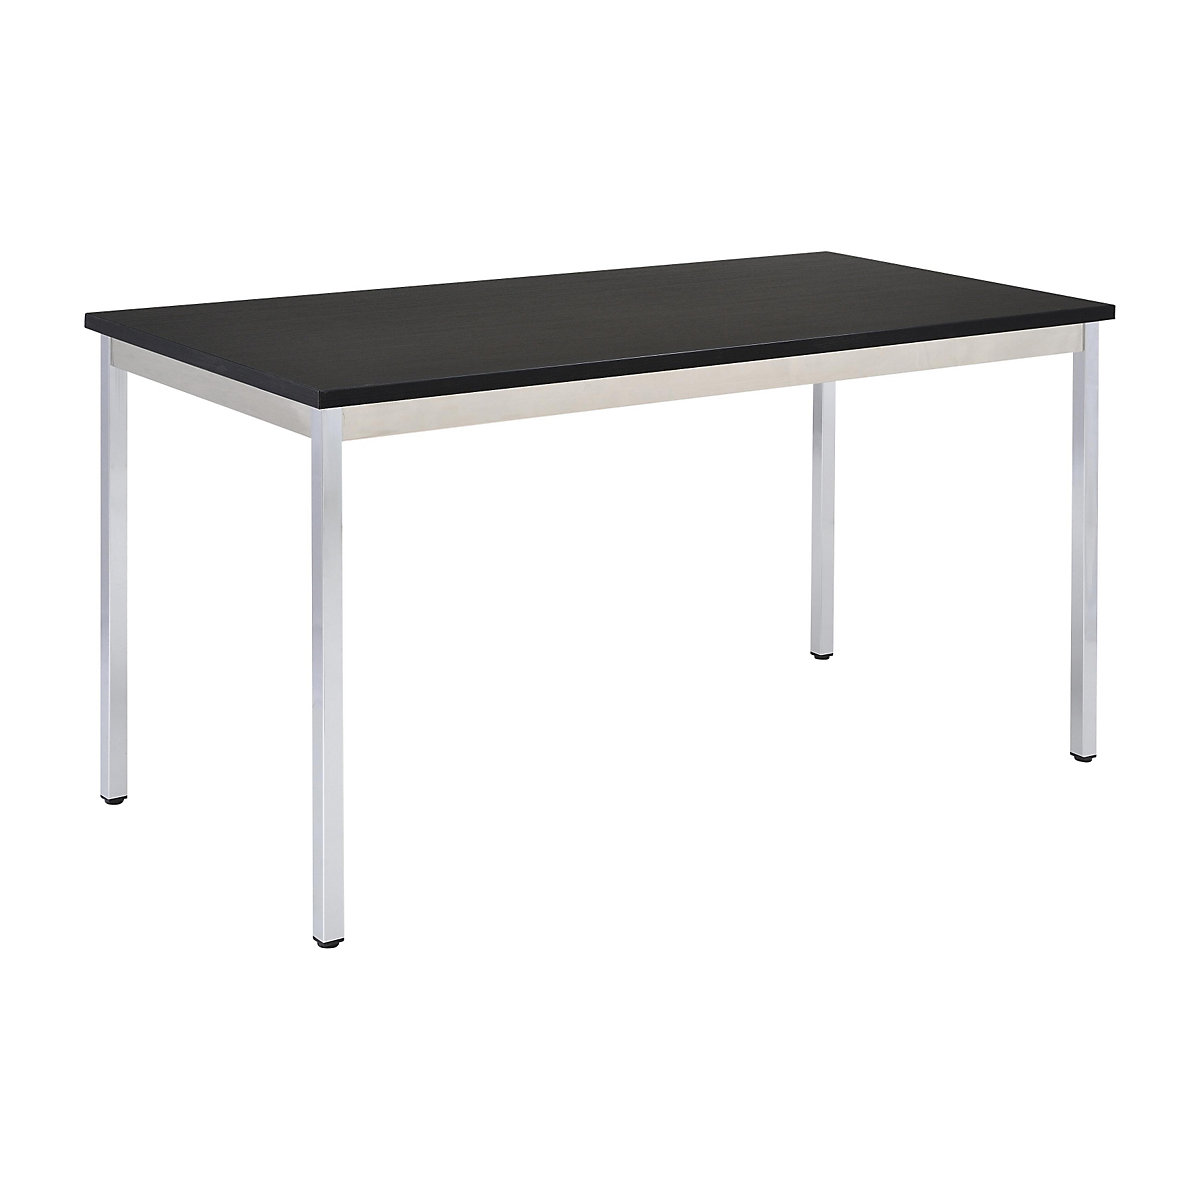 Višenamjenski stol – eurokraft basic, pravokutna izvedba, VxŠxD 740 x 1800 x 800 mm, ploča u crnoj boji, kromirano postolje-14